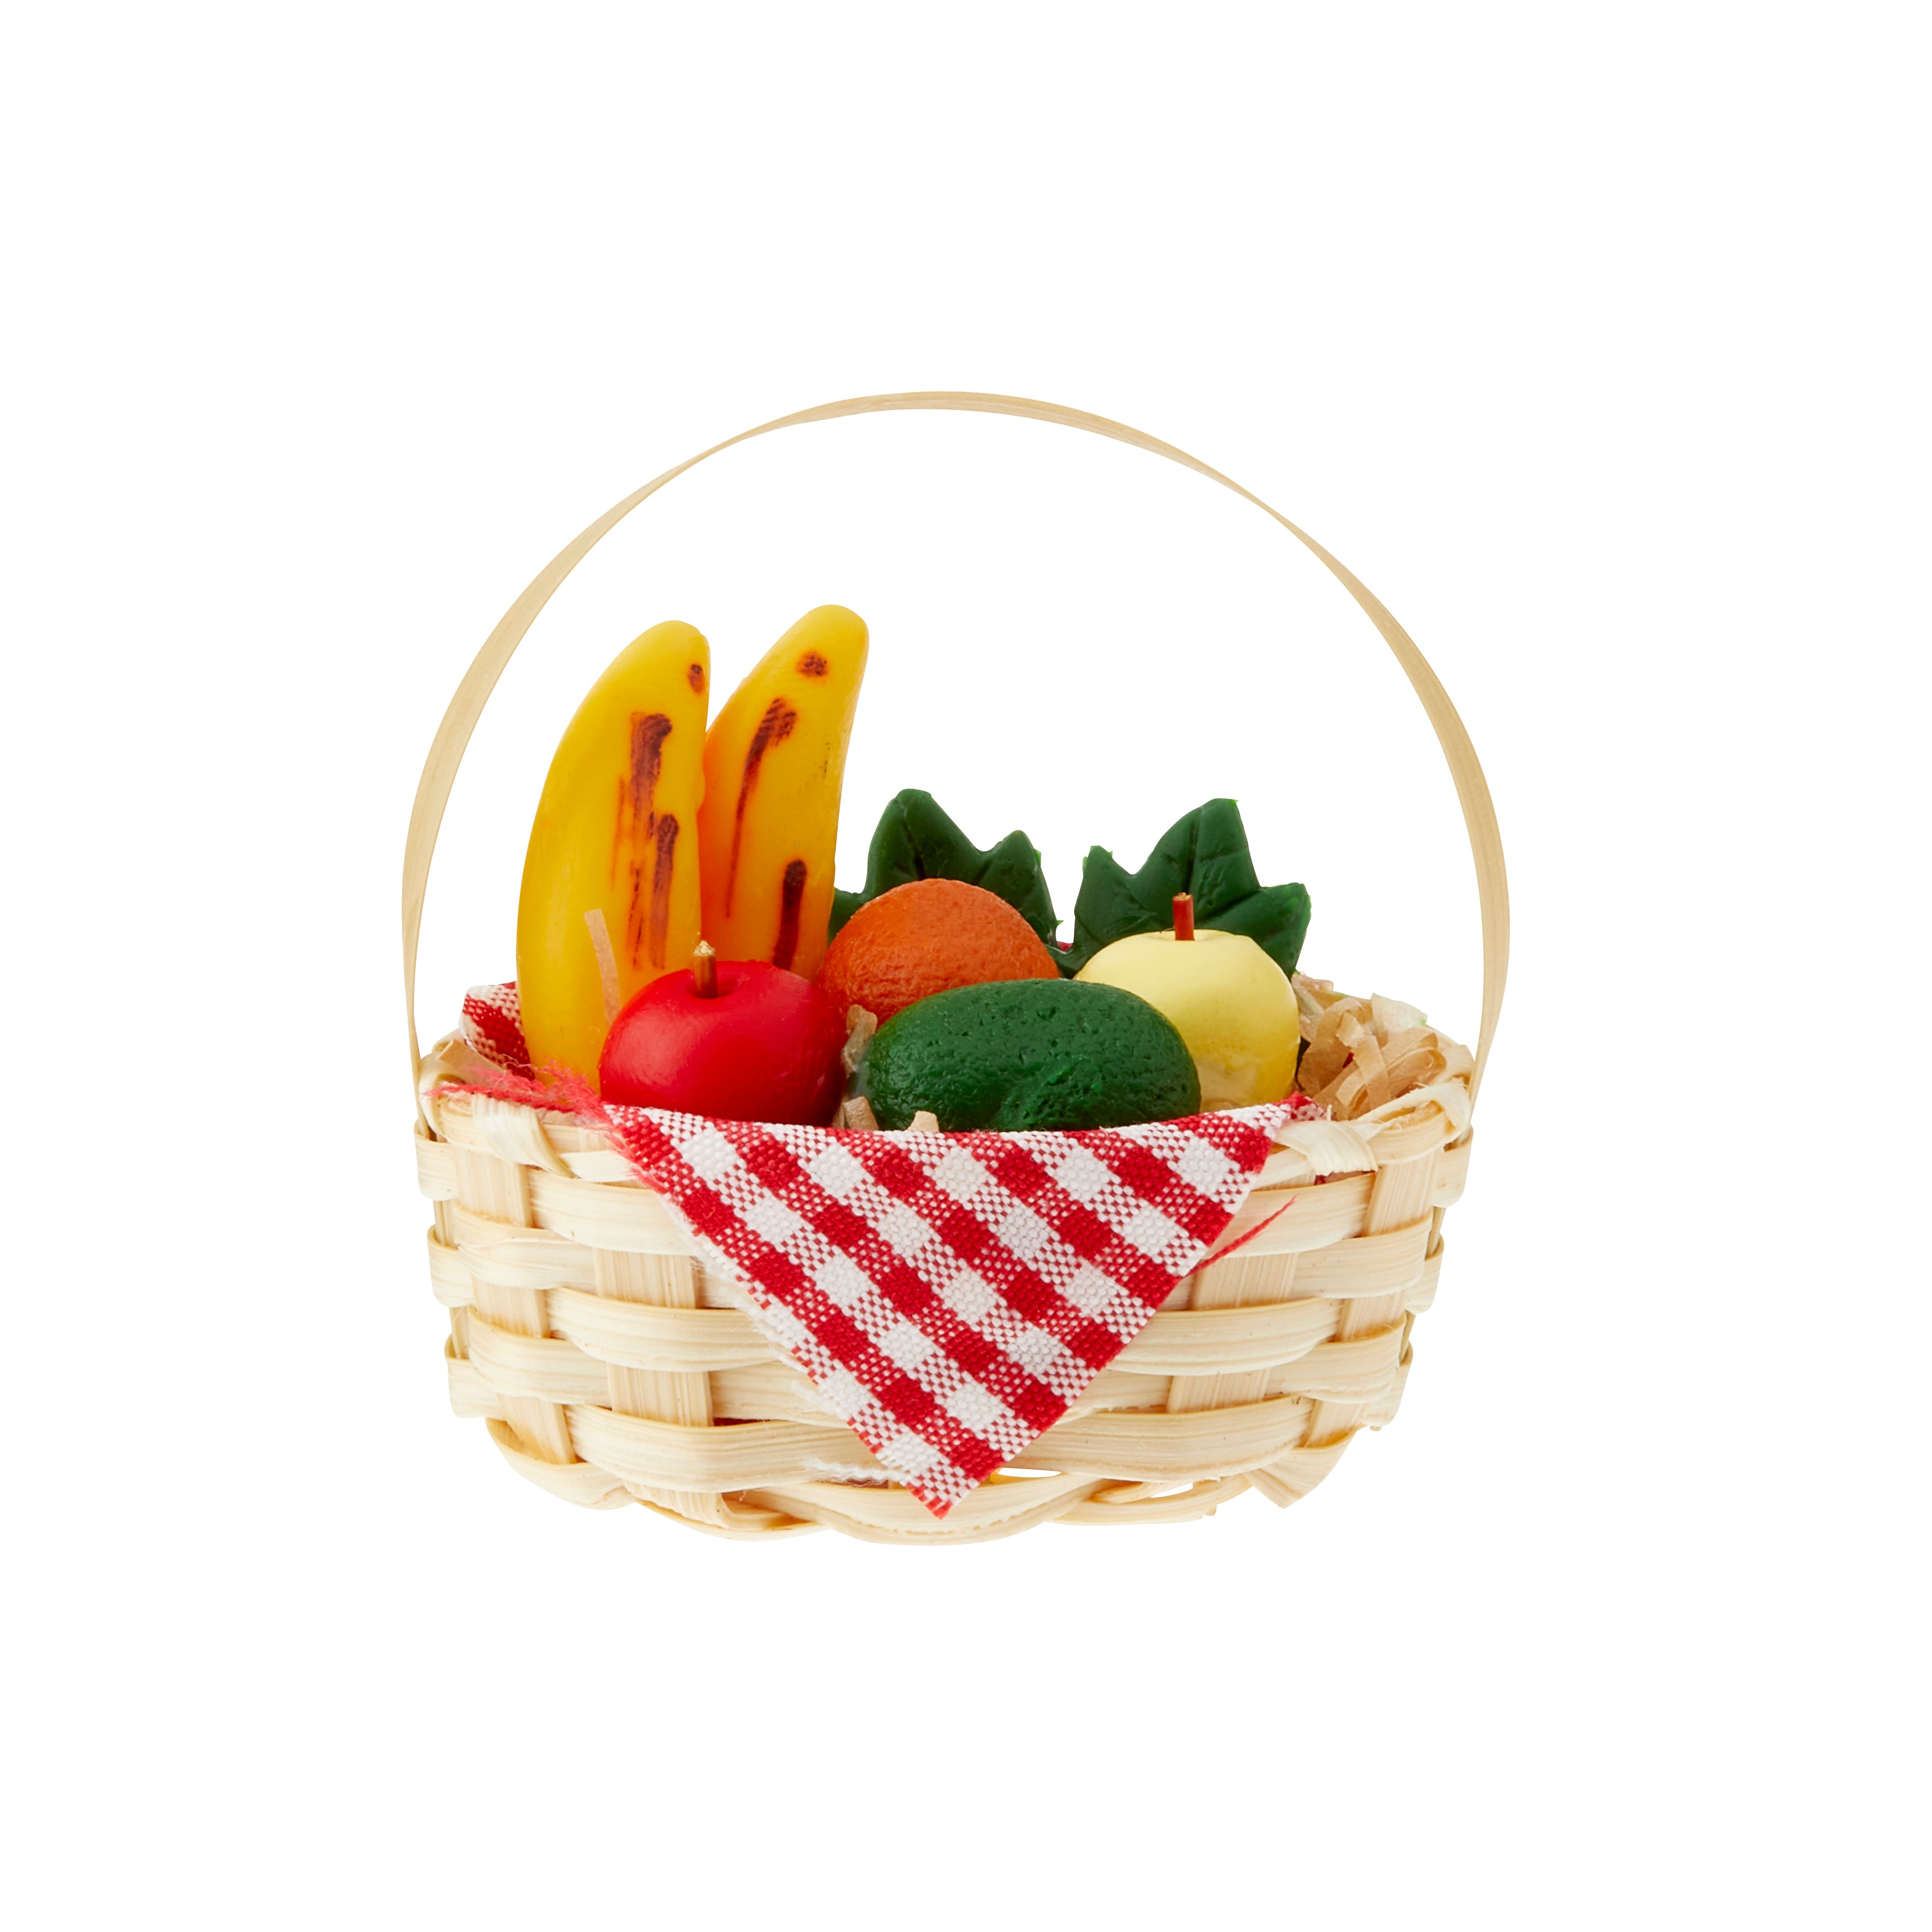 Edible Arrangements® fruit baskets - M&M'S® MINIS Explosion Bundle